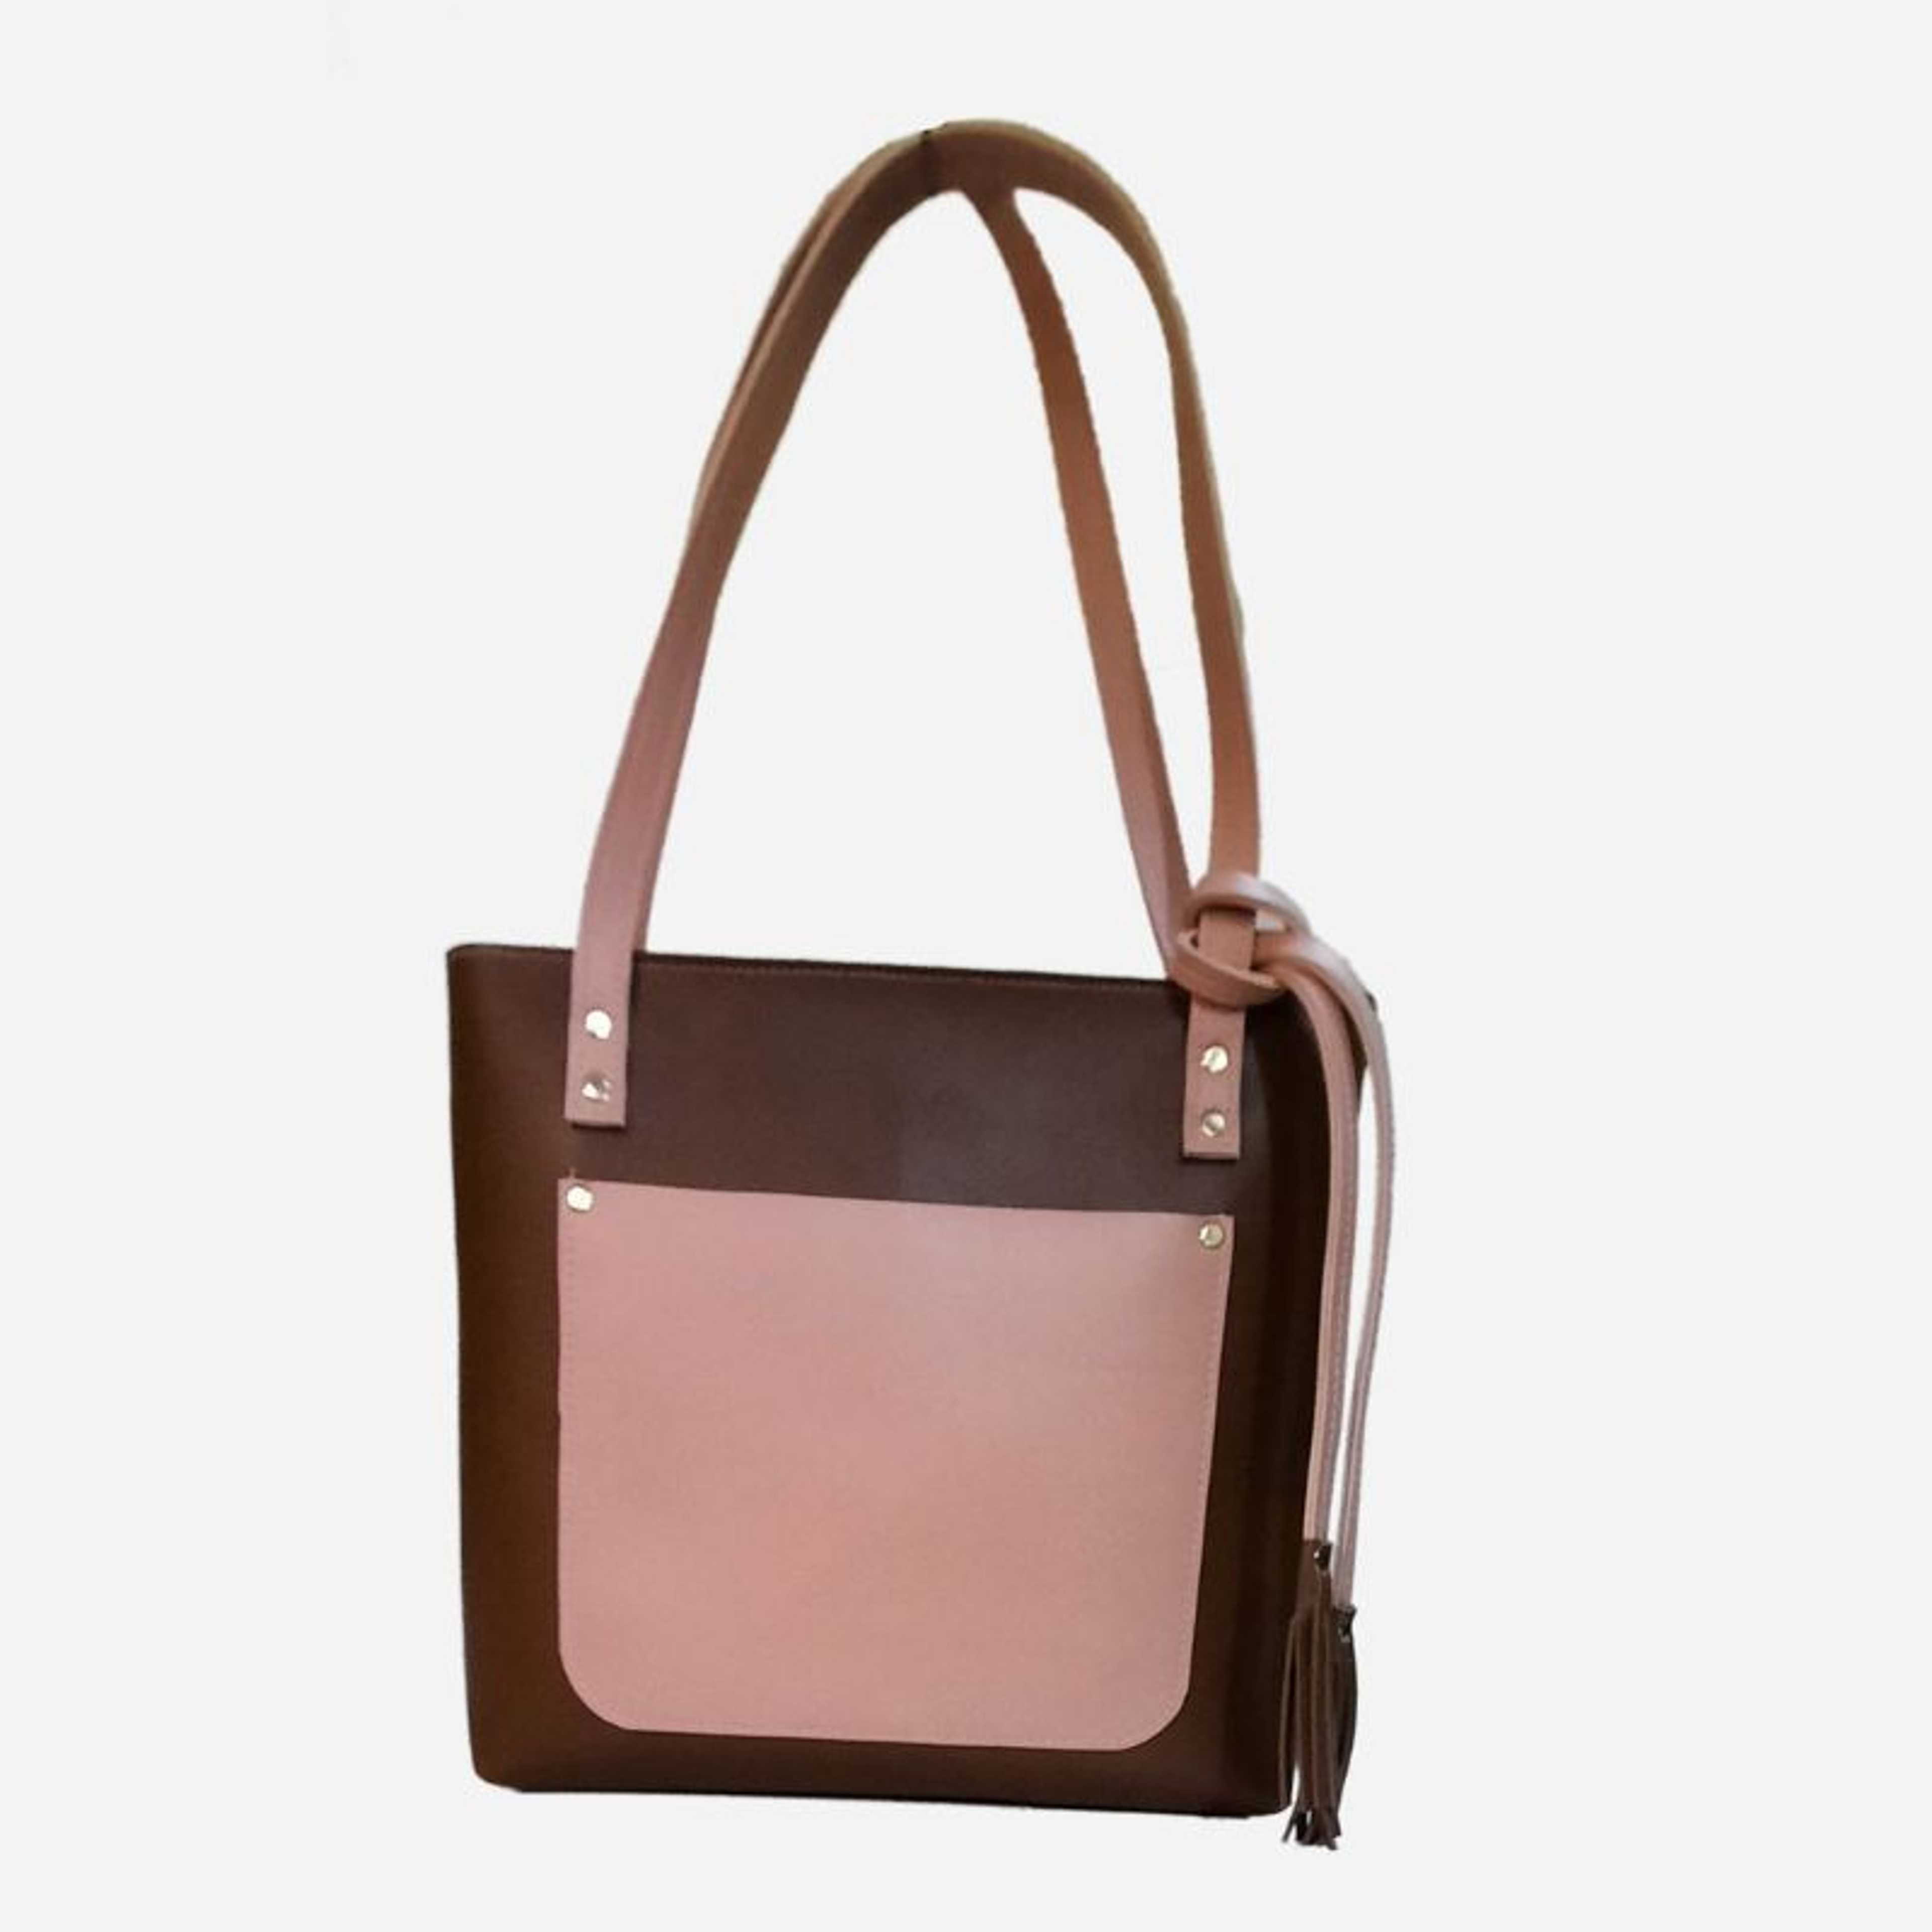 Handbag For Girls - Dark Brown Shoulder Bag